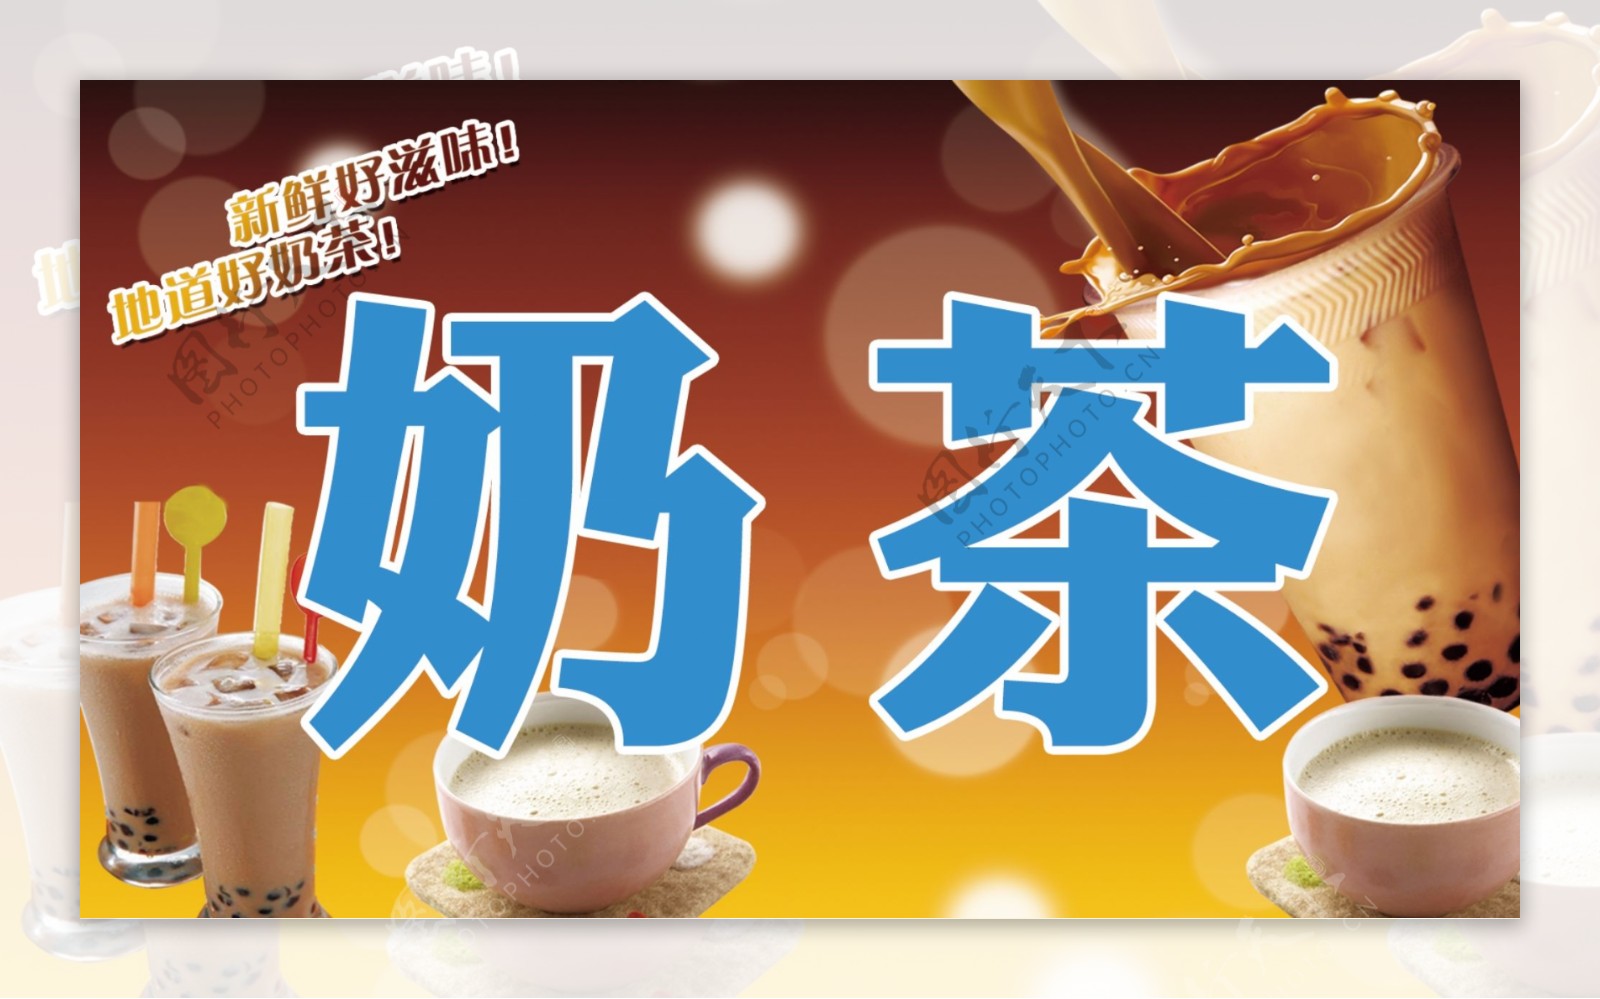 奶茶招牌设计模板图片